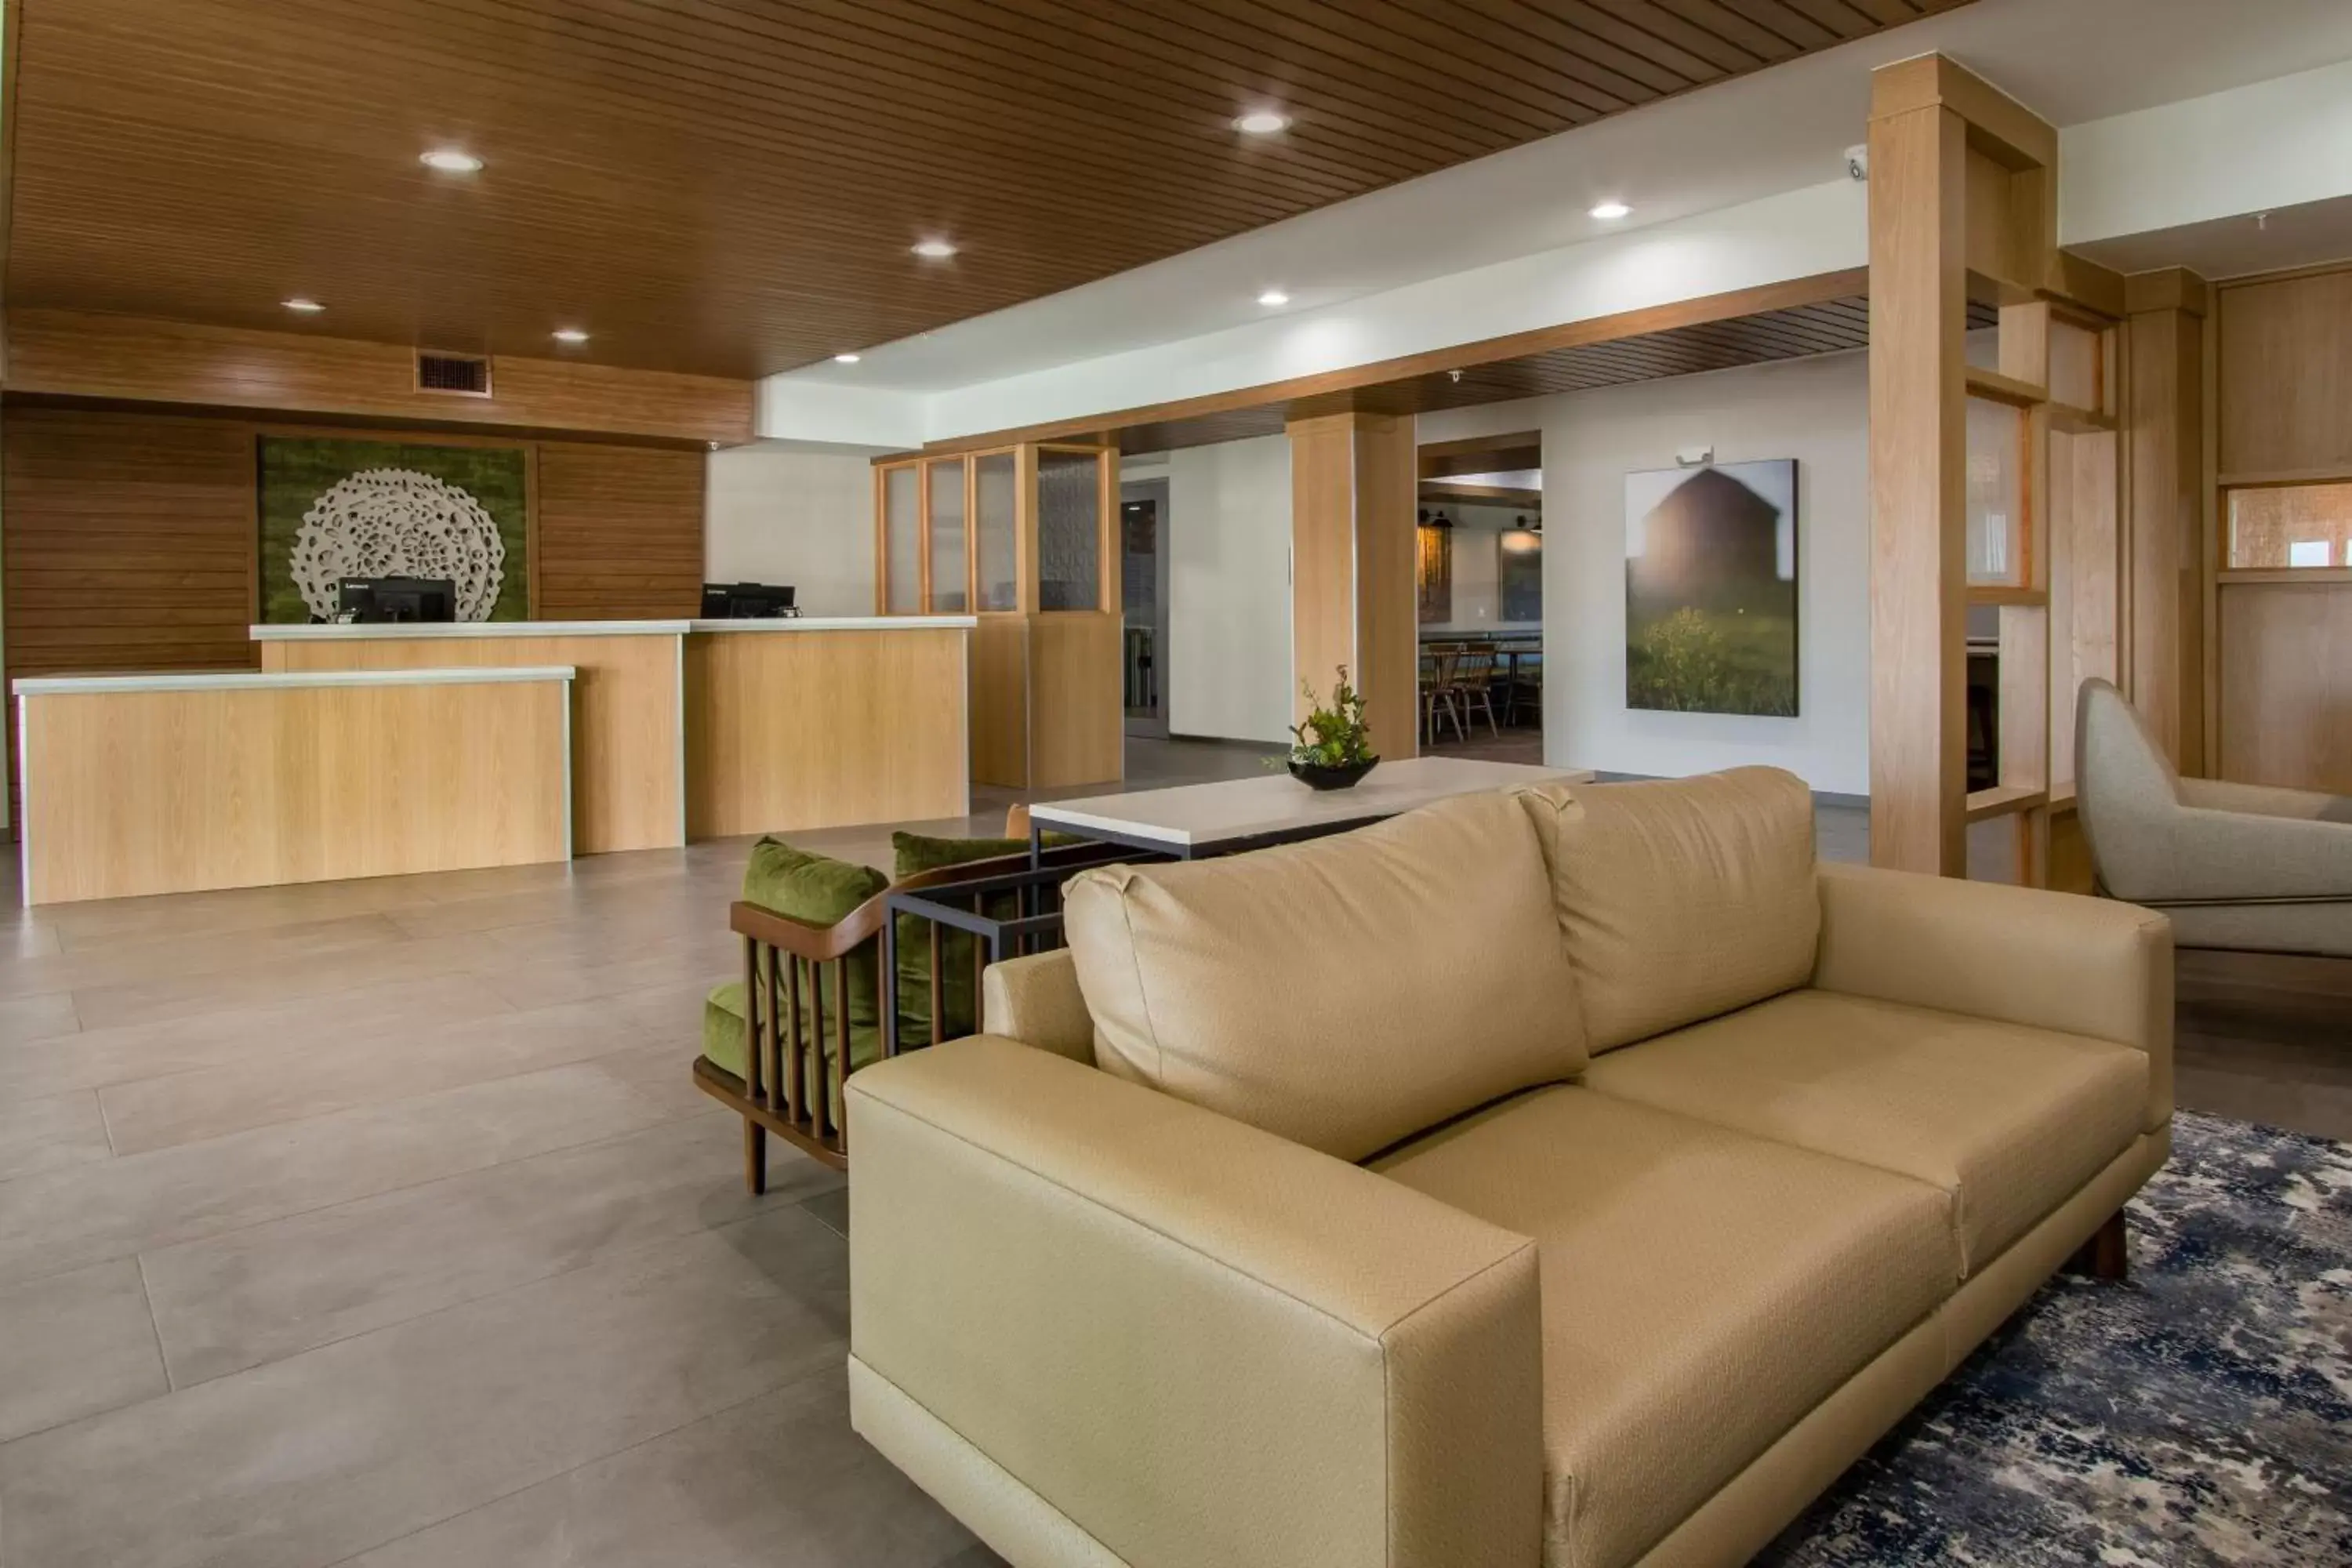 Lobby or reception, Lobby/Reception in Fairfield Inn & Suites Houston Katy